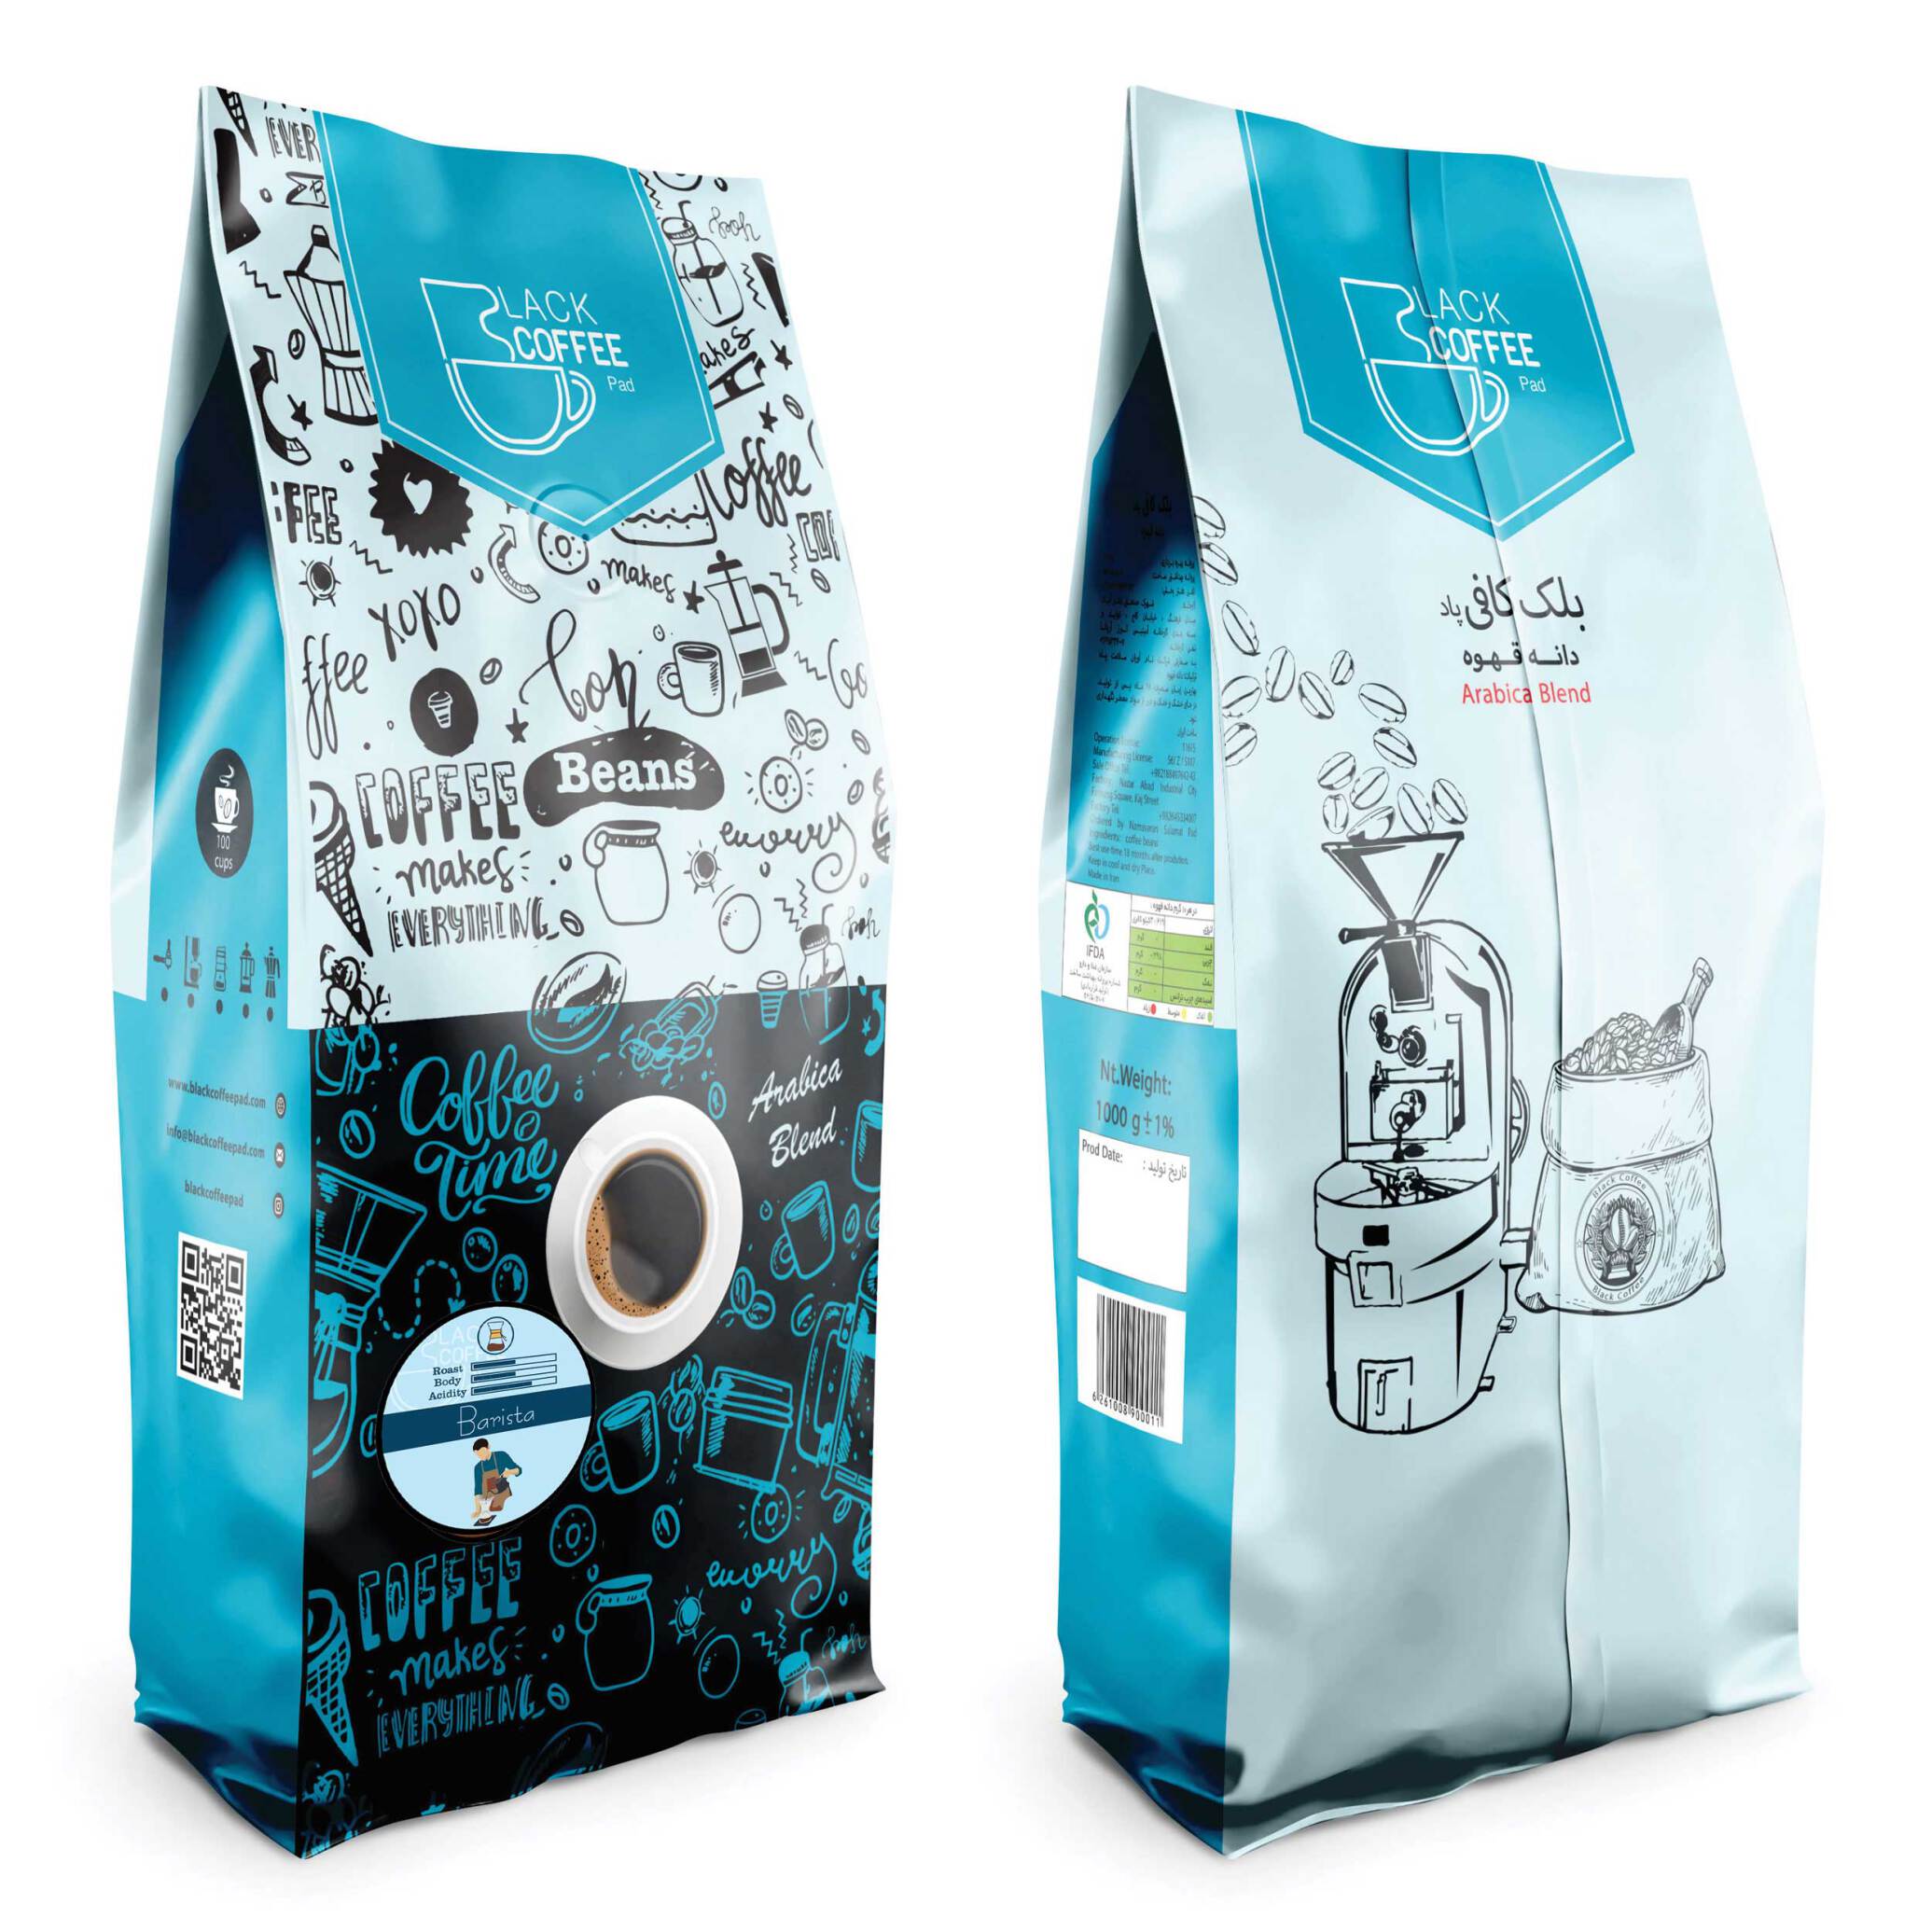  دانه قهوه باریستا Barista Coffee Beans | بلک کافی | فروشگاه قهوه و محصولات قهوه| دانه قهوه | بسته بندی قهوه 